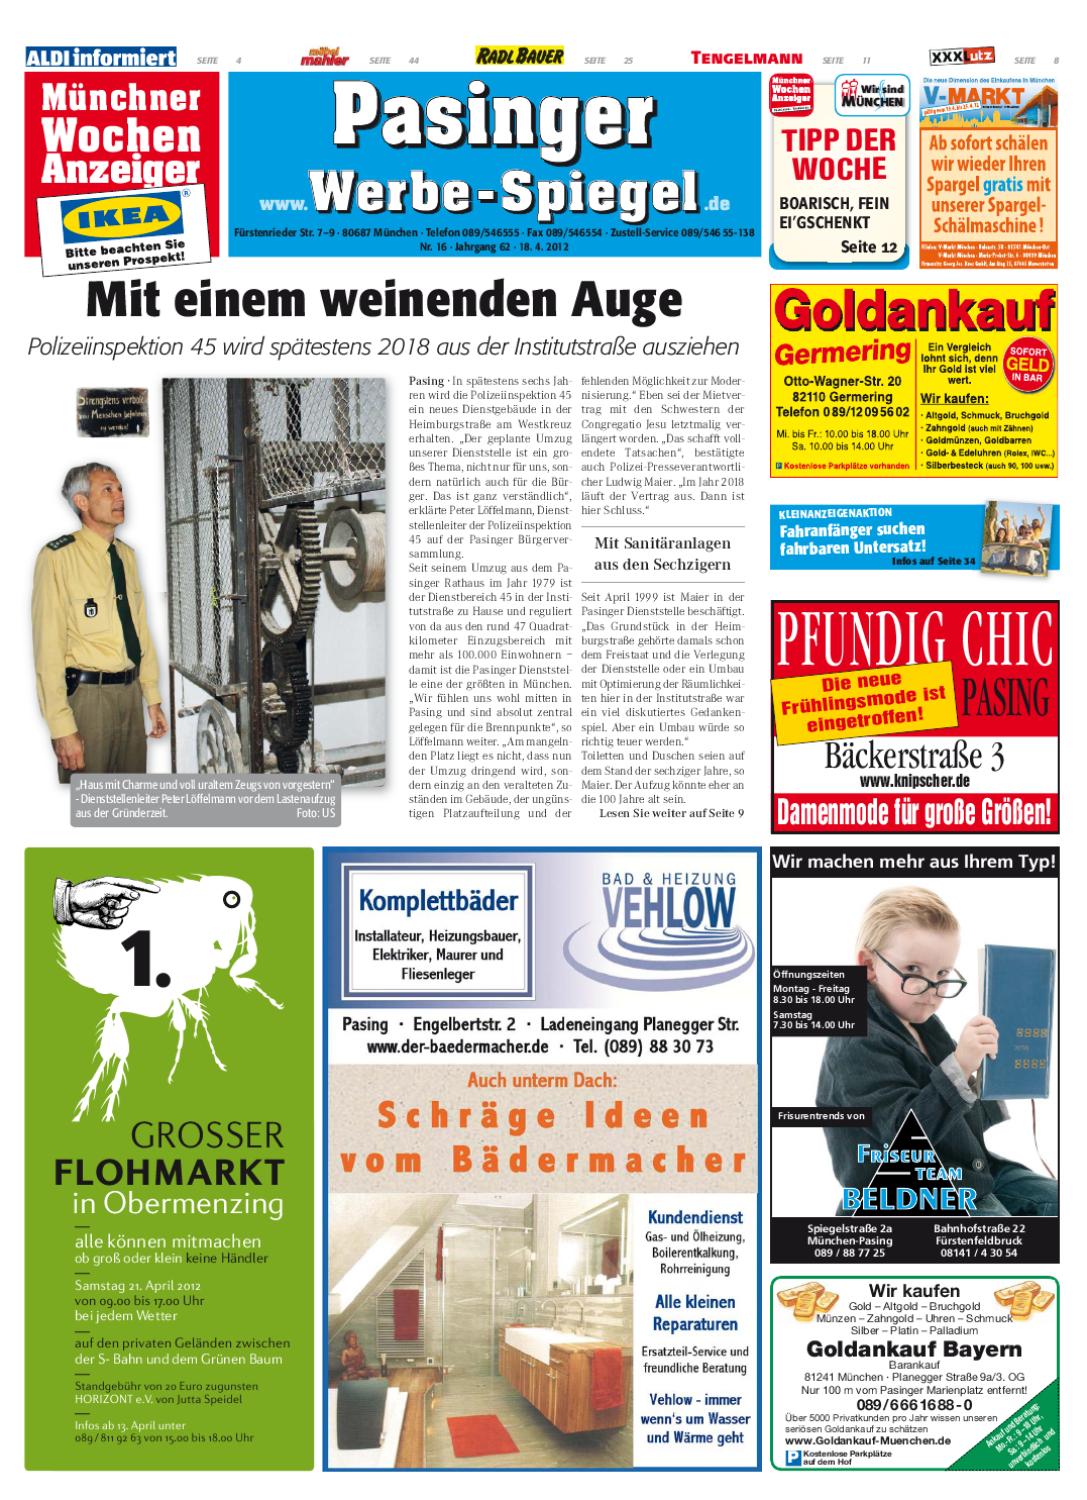 Rosenbogen Metall Aldi Best Of Kw 16 2012 by Wochenanzeiger Me N Gmbh issuu